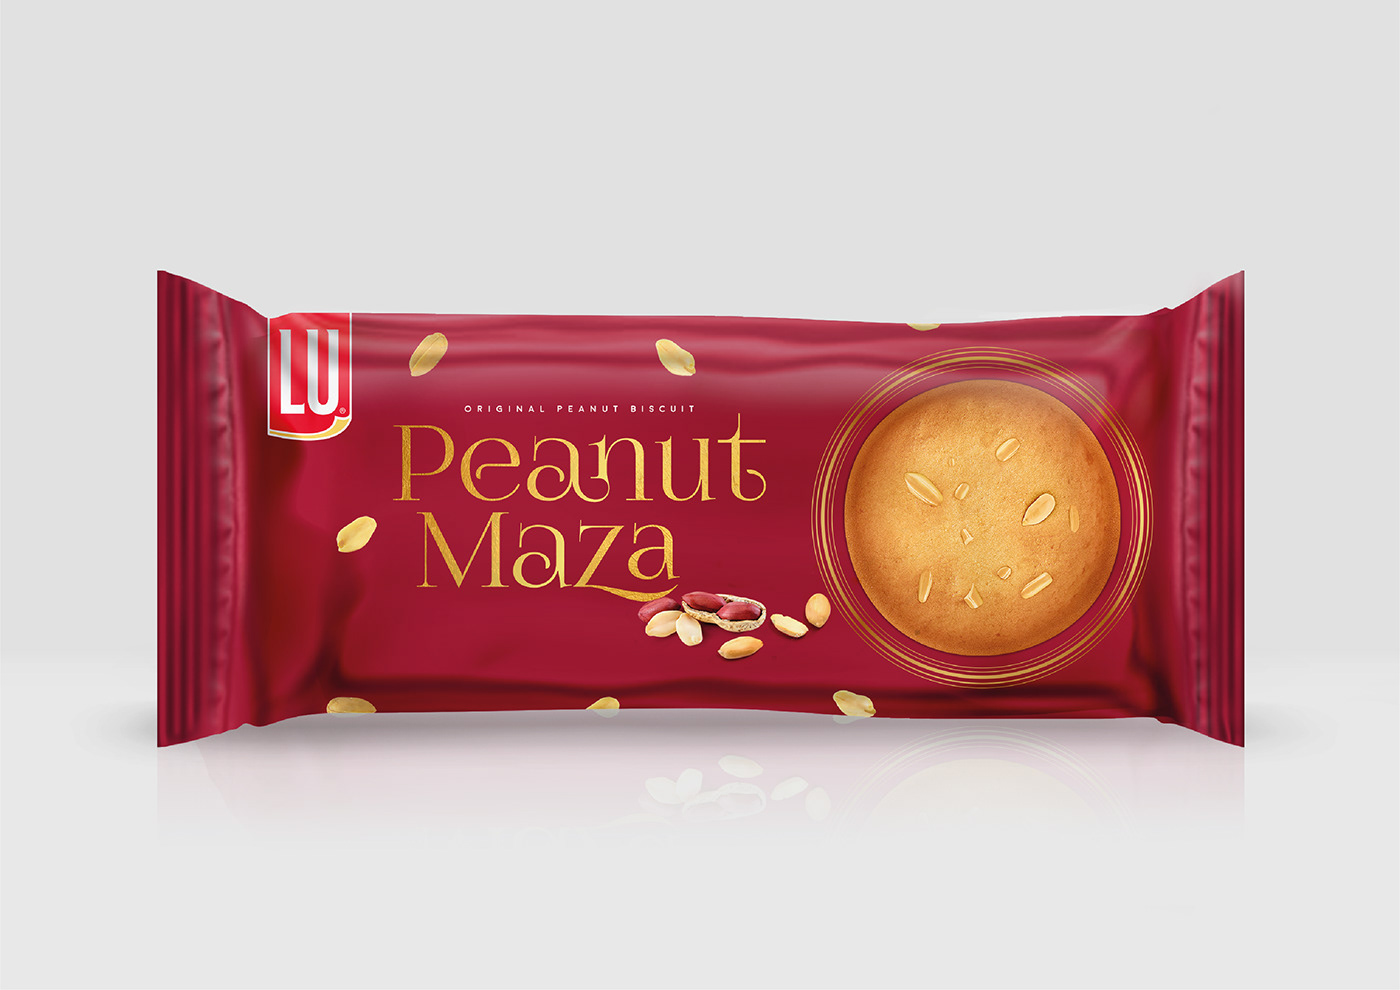 biscuit packaging LU Packaging Peanut Biscuit Packaging Peanut Maza